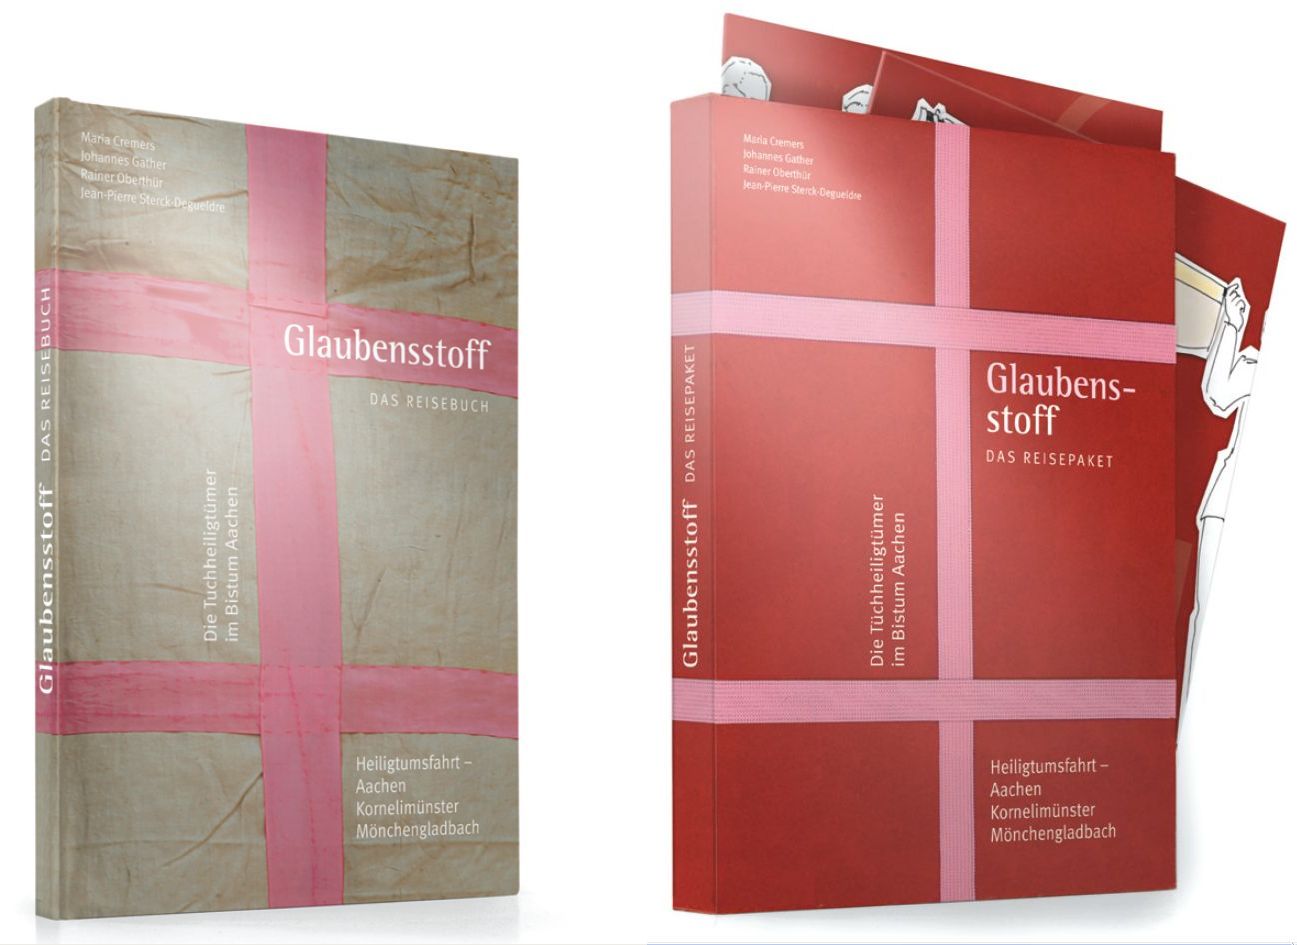 Glaubensstoff - Das Reisebuch und Reisepaket (c) KI Aachen / Agentur Hüsch & Hüsch